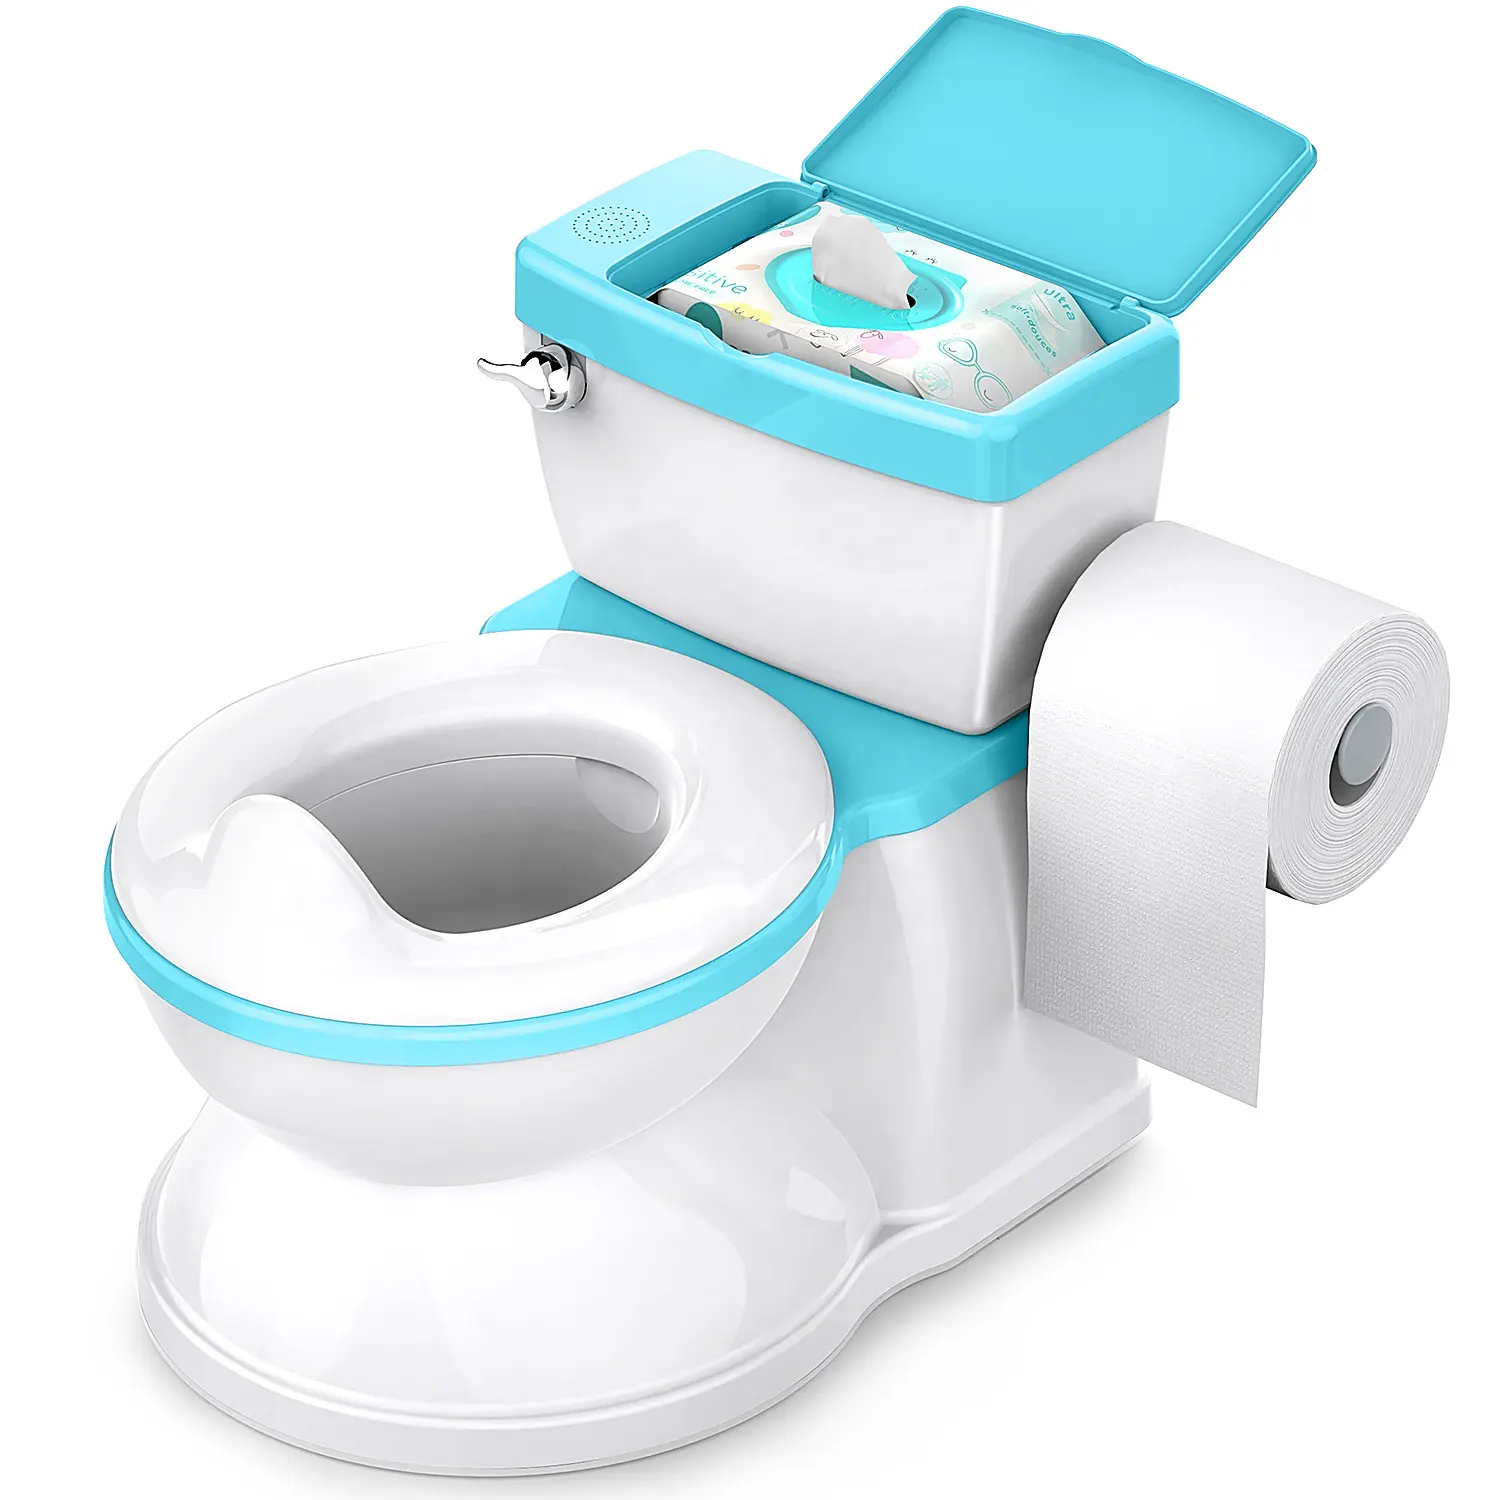 Toilet trainer per bambini di 1-6 anni venduto direttamente dalla fabbrica toilette mobile in plastica portatile per bambini a basso prezzo